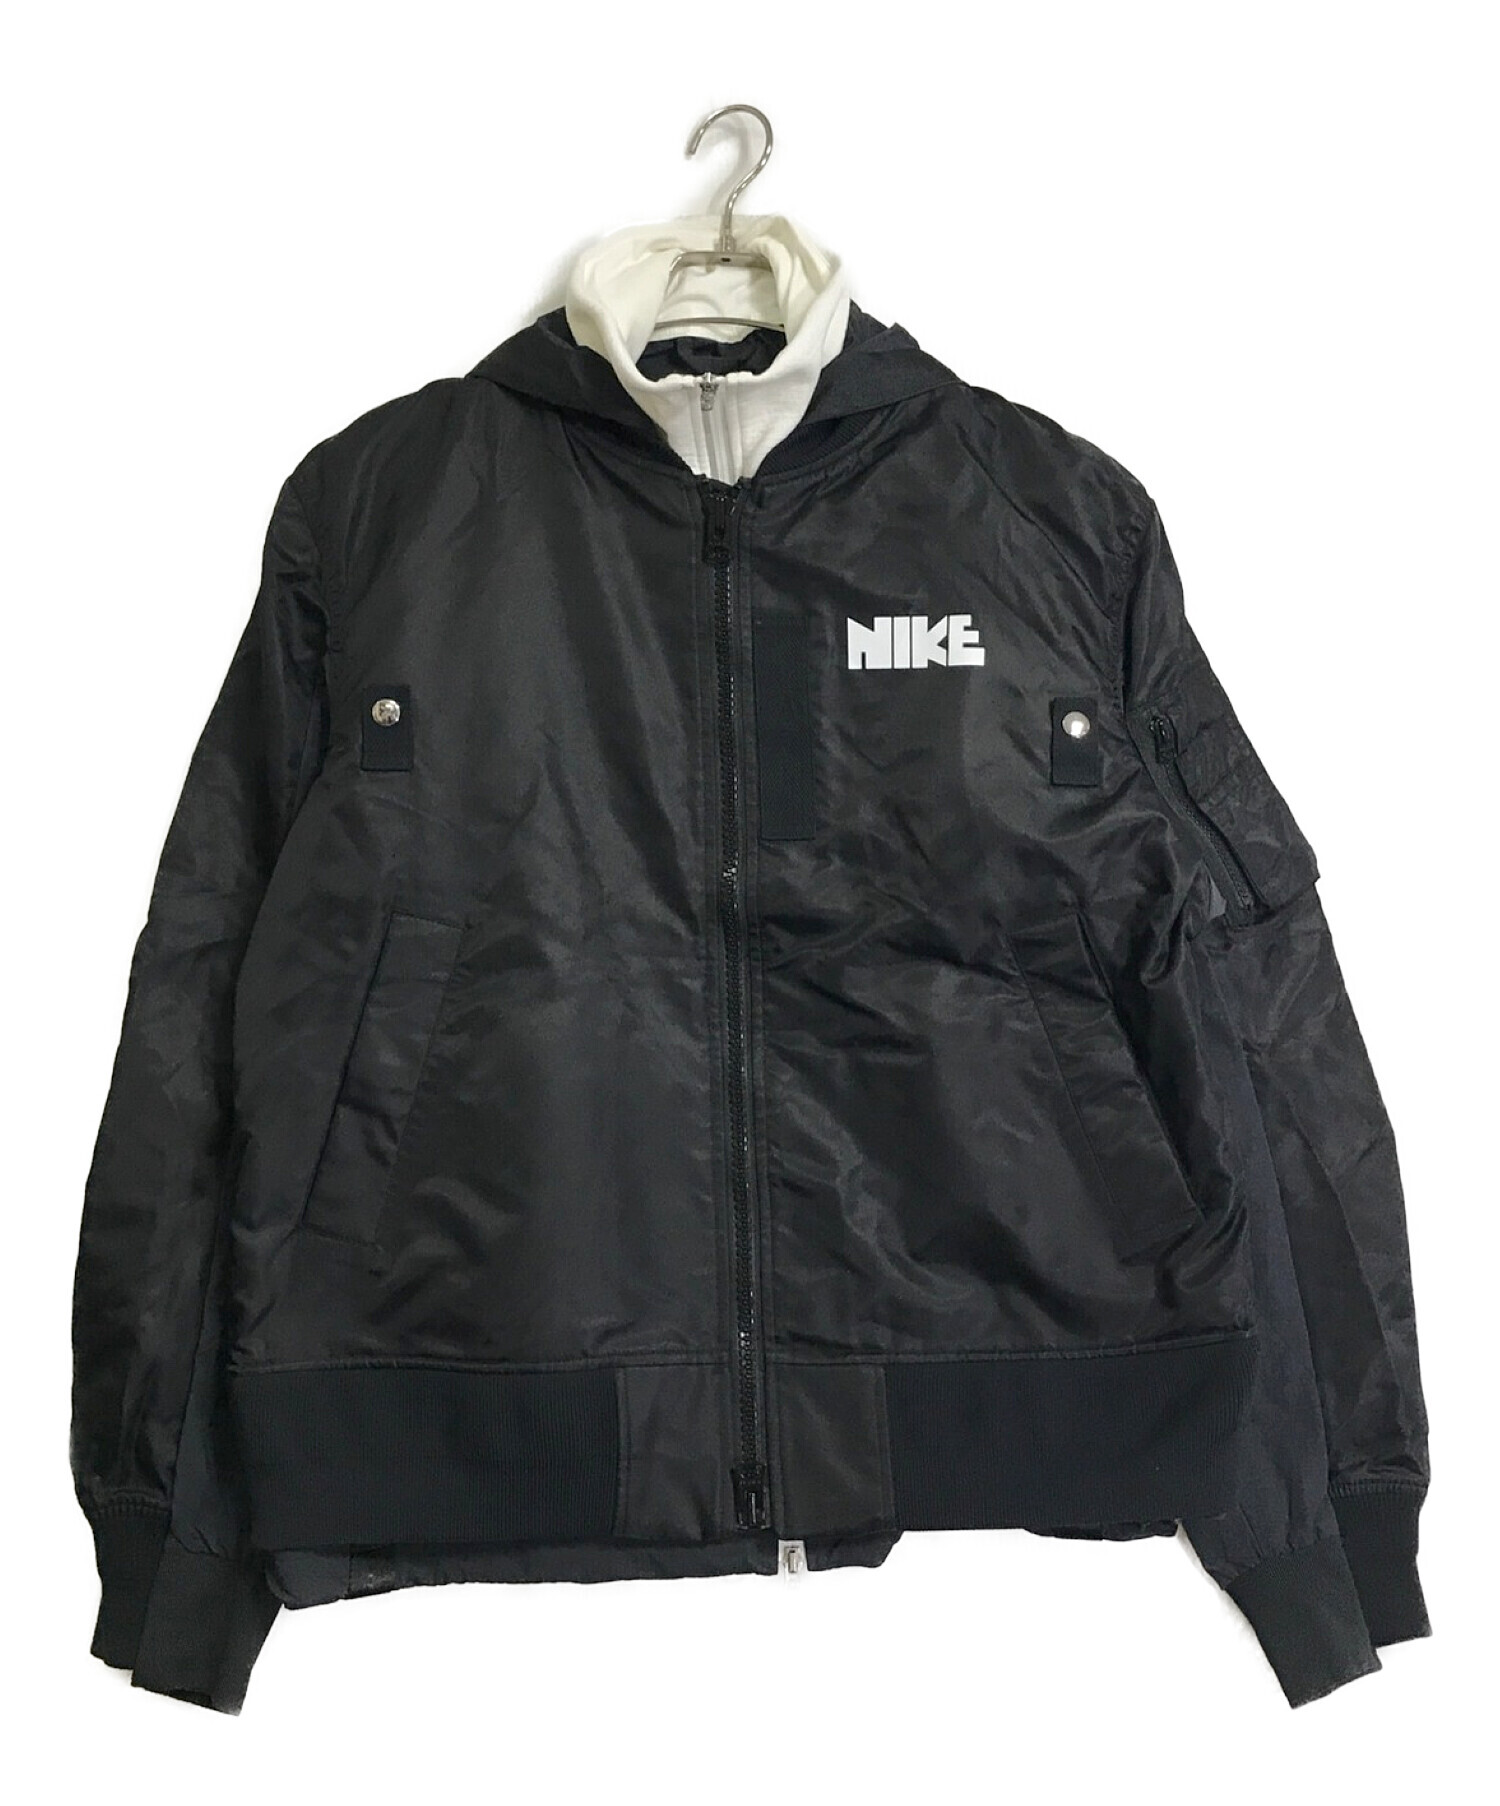 NIKE (ナイキ) sacai (サカイ) MA-1/レイヤードフードボンバージャケット ブラック×ホワイト サイズ:M